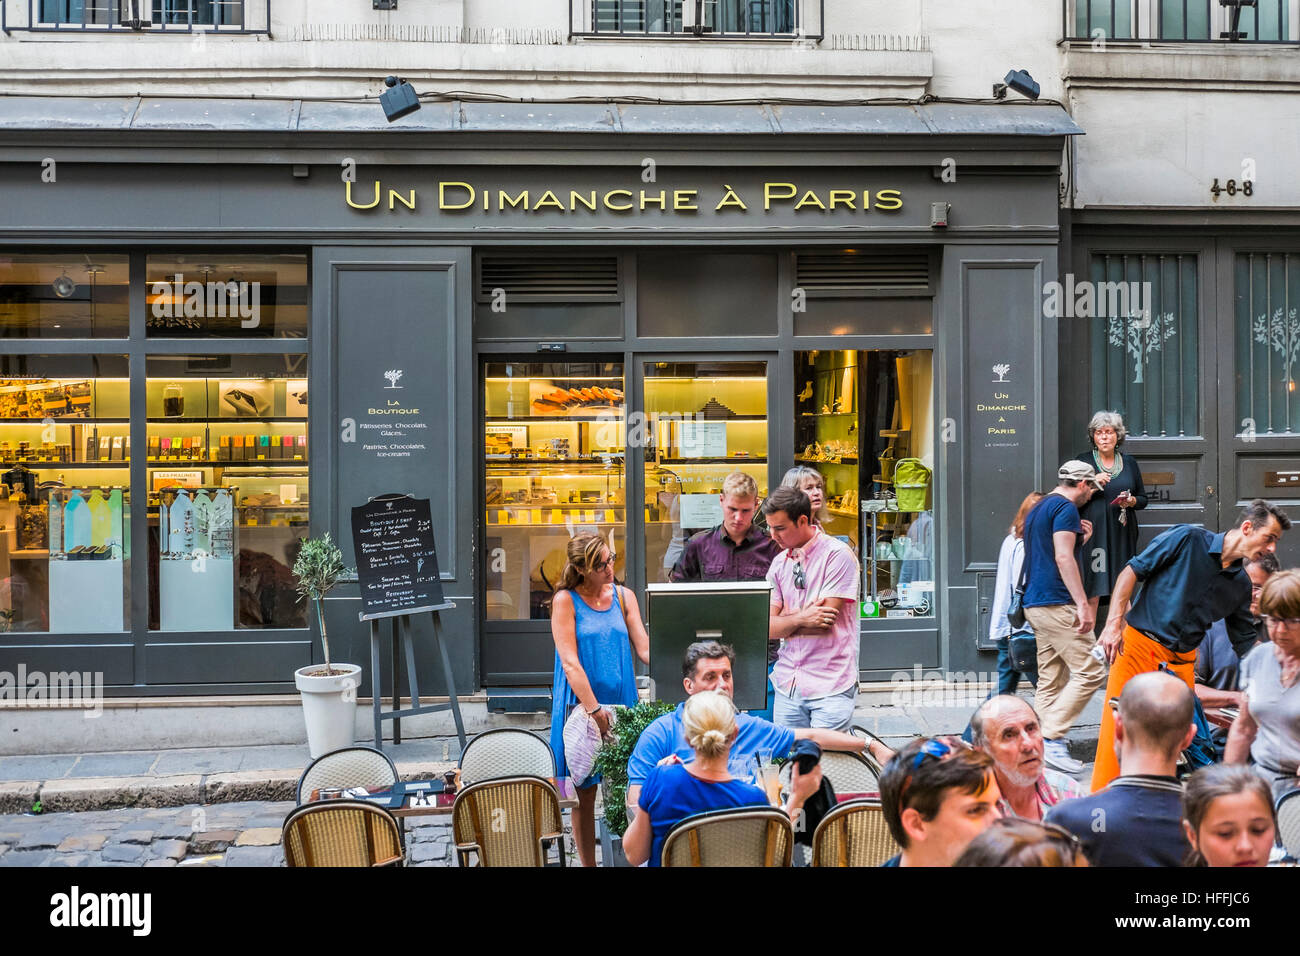 Scena di strada nella parte anteriore del negozio di pasticceria onu dimanche à Paris Foto Stock